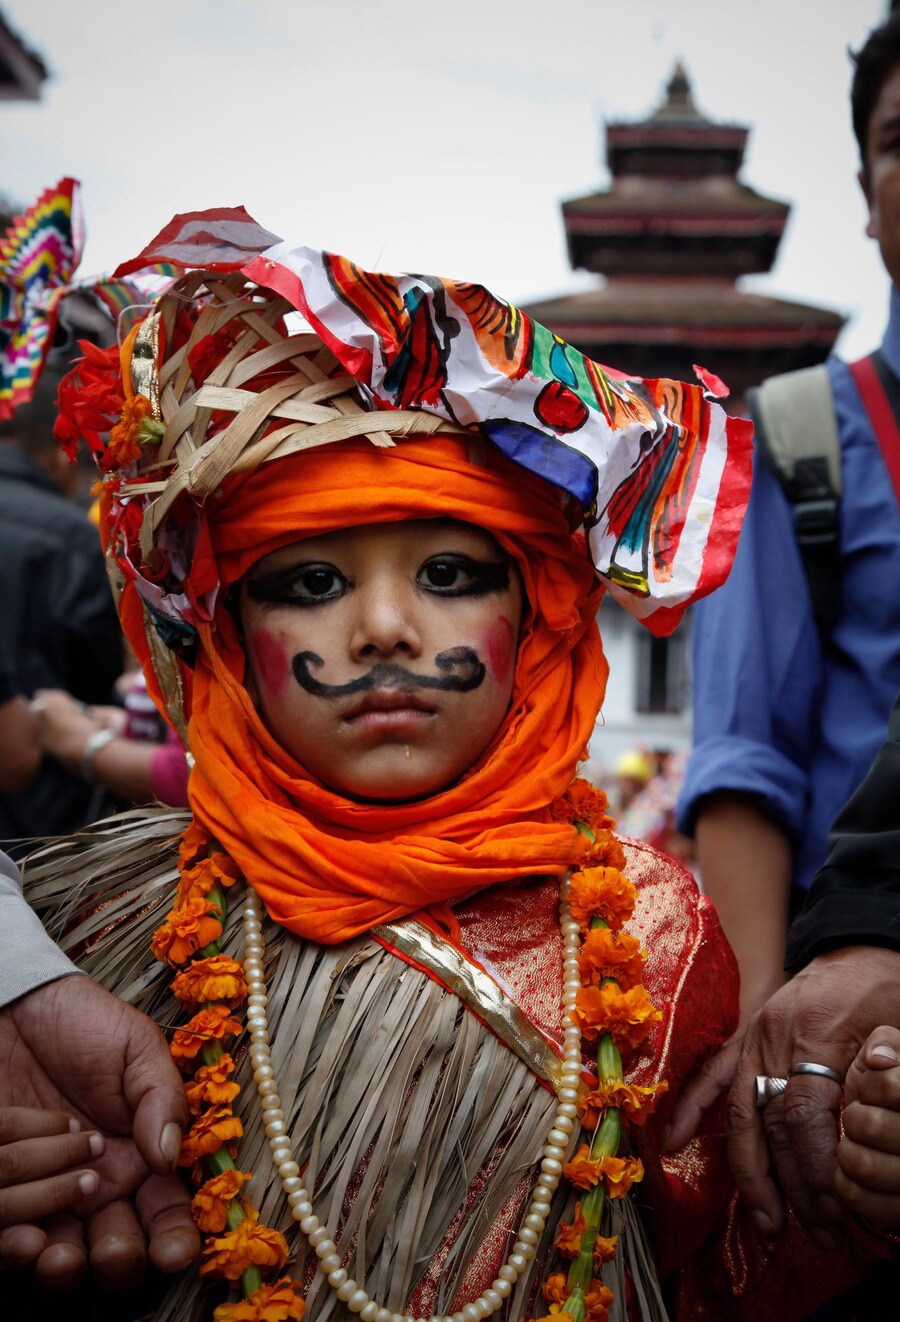 Pesta di Nepal: ‘Jika Anda tidak punya sapi, Anda juga bisa mendandani anak laki-laki seperti sapi’